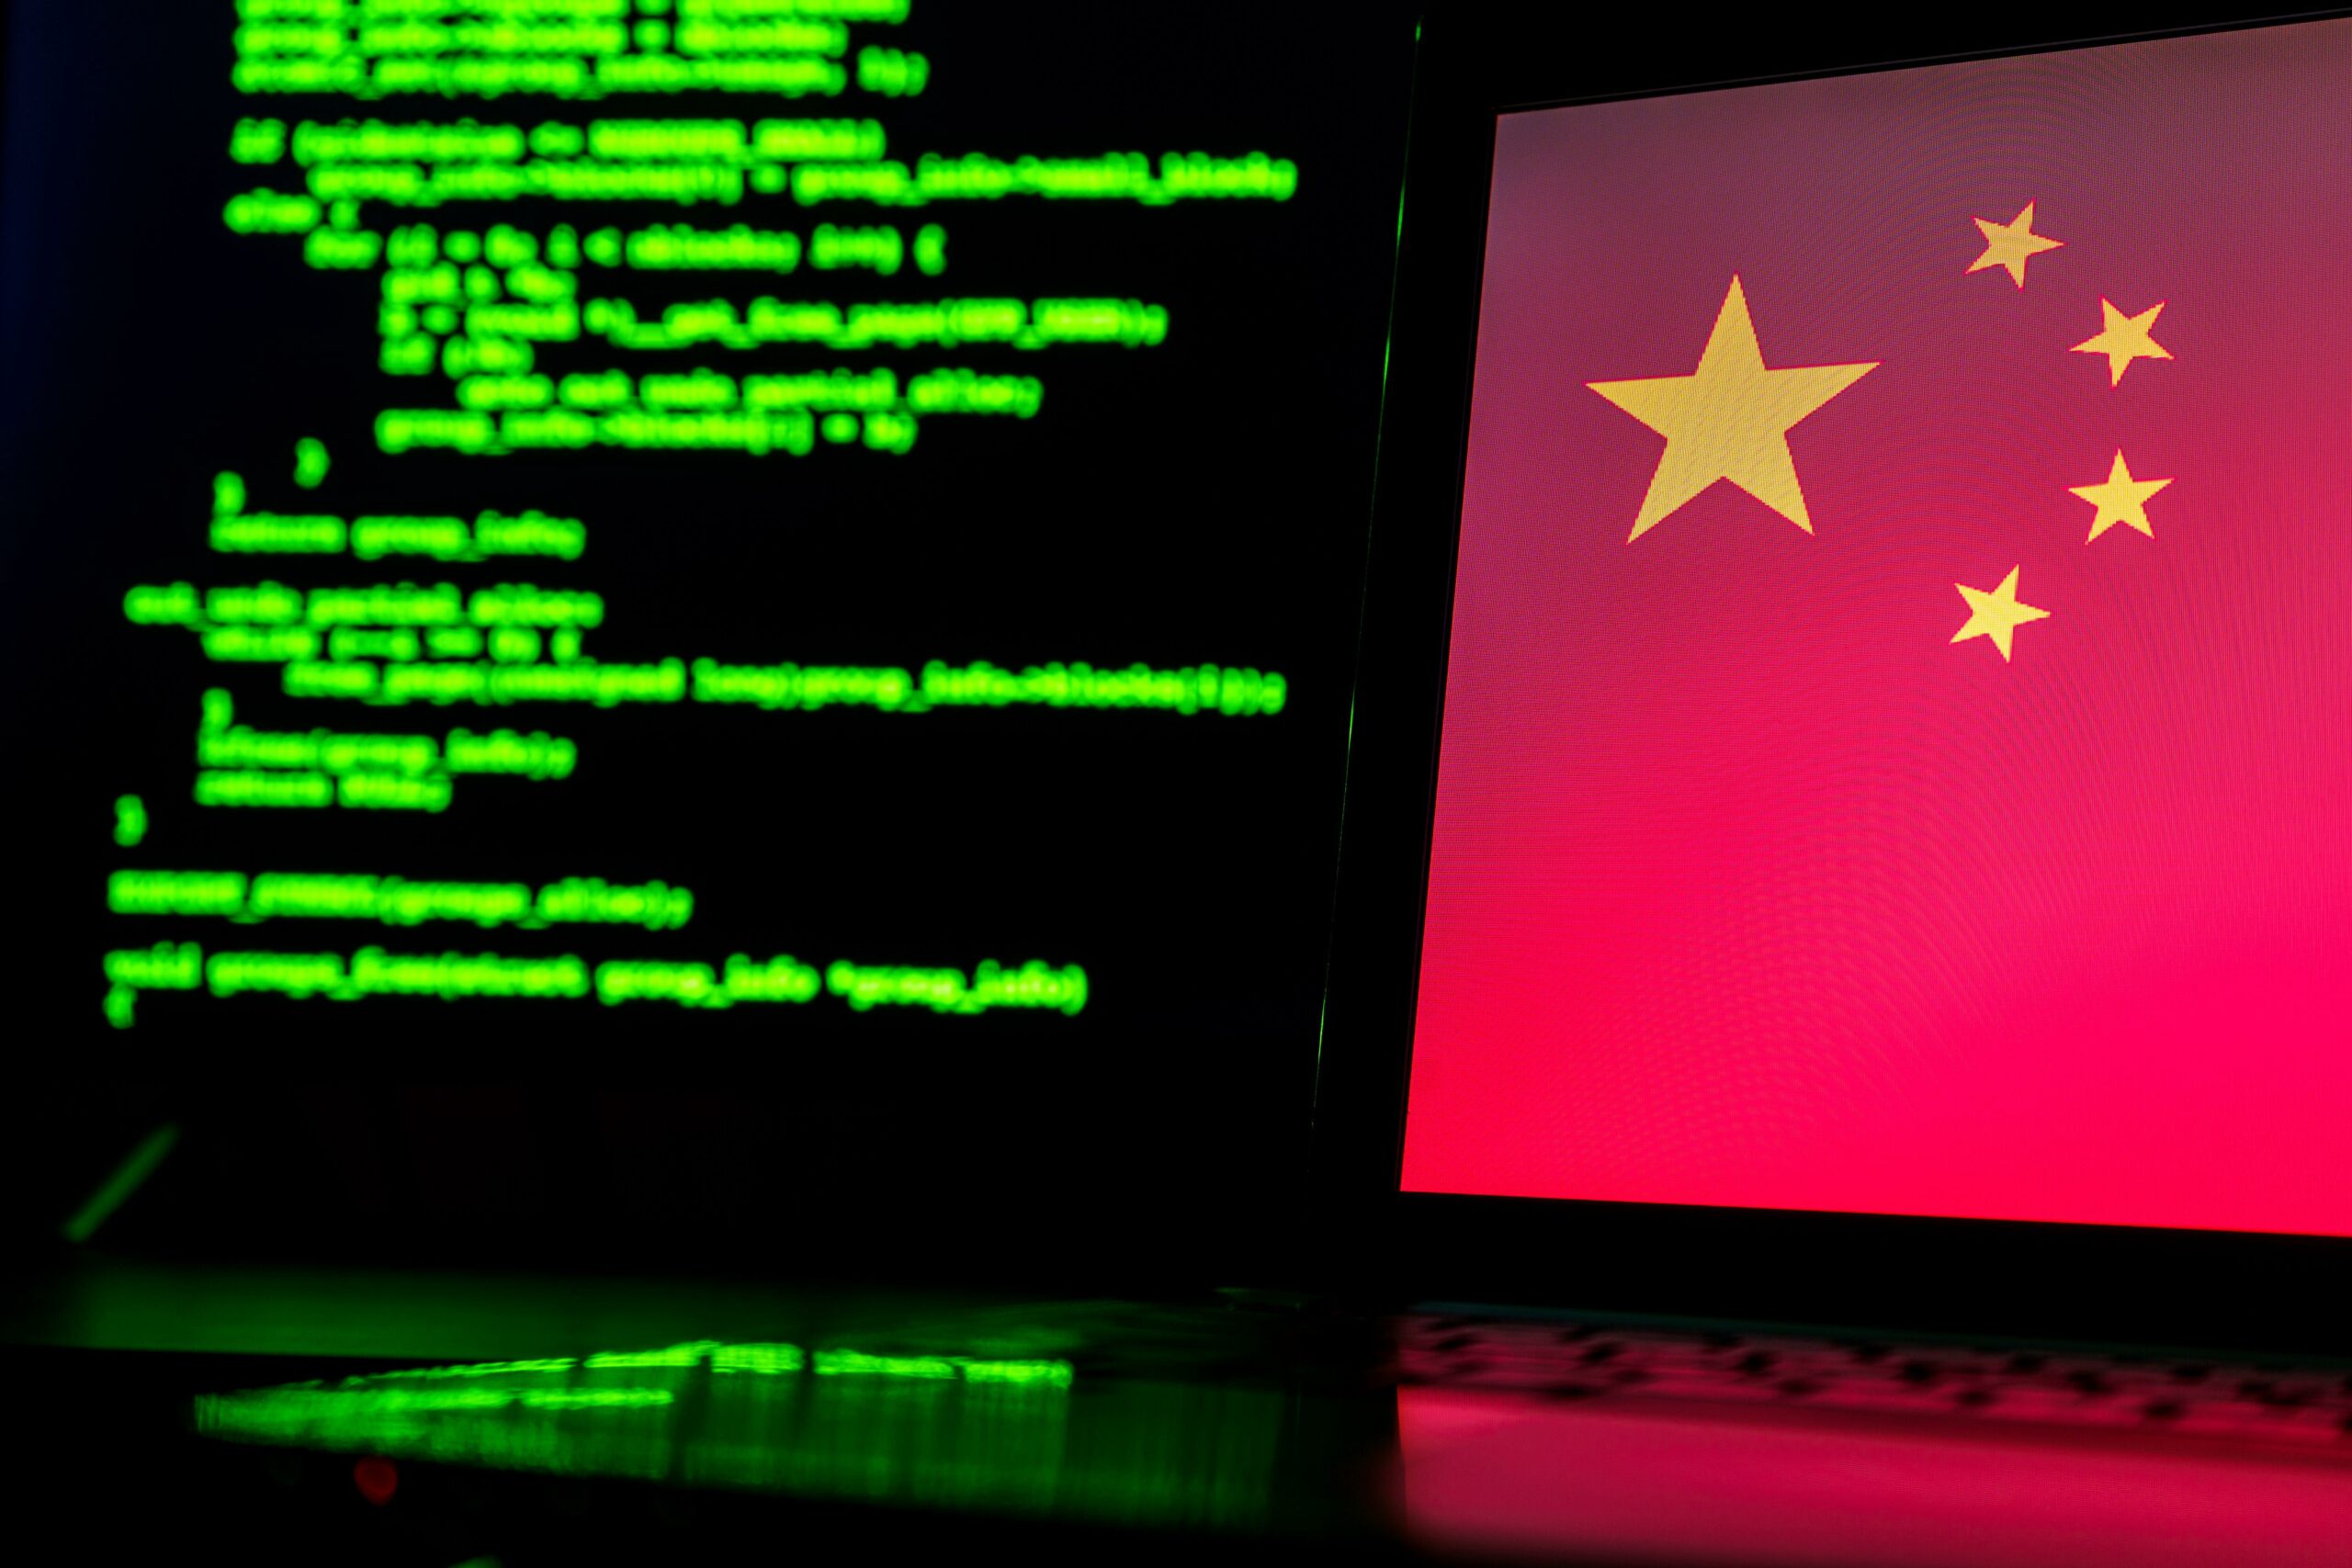 Chinese door de staat gesponsorde hackers aangeklaagd, sancties opgelegd door de VS